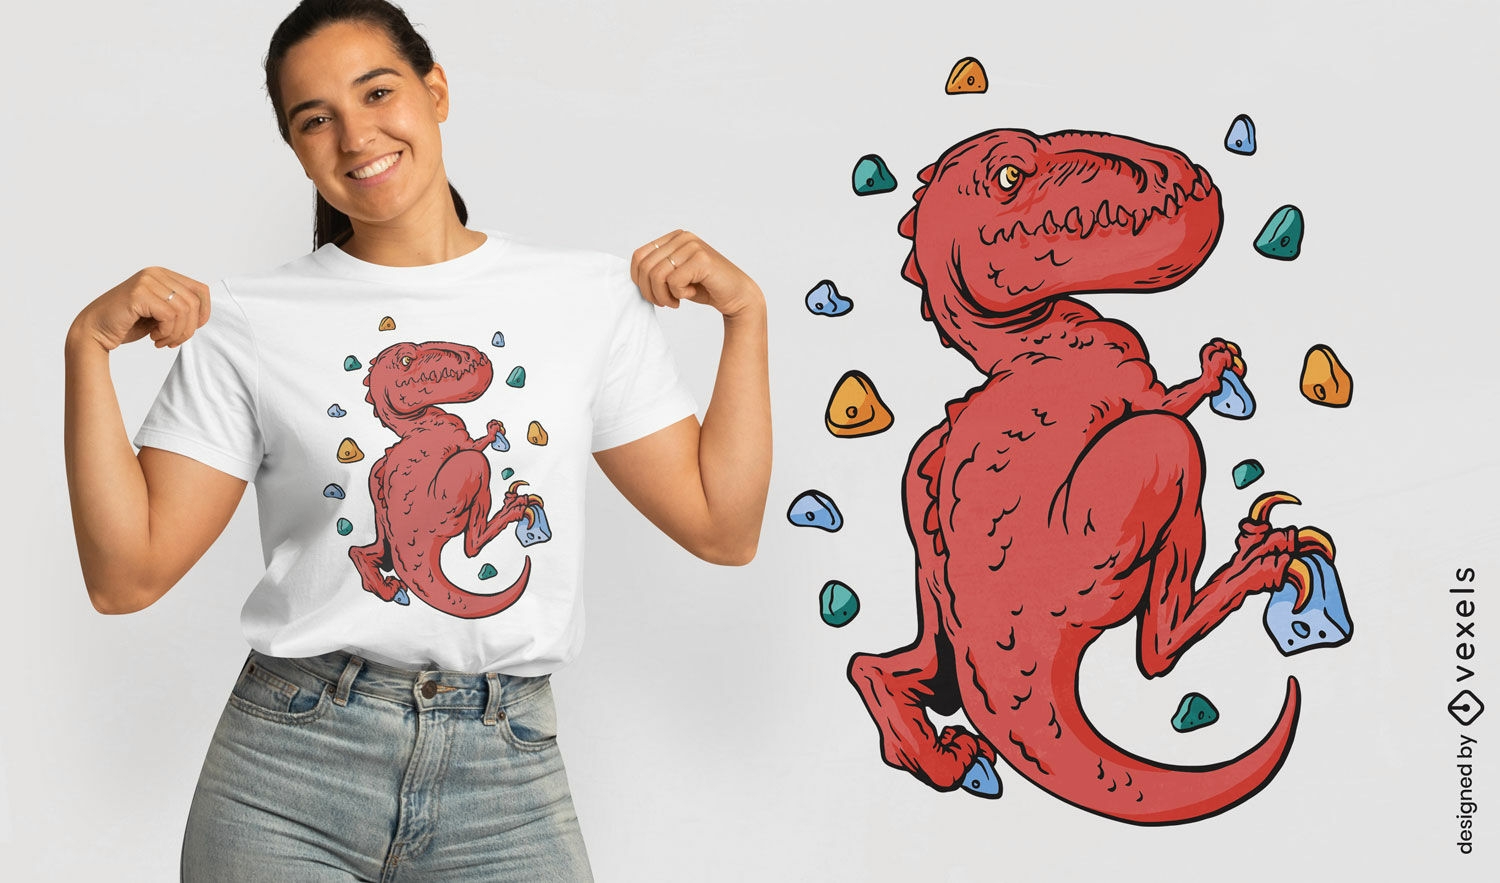 T-rex indoor rock climbing t-shirt design